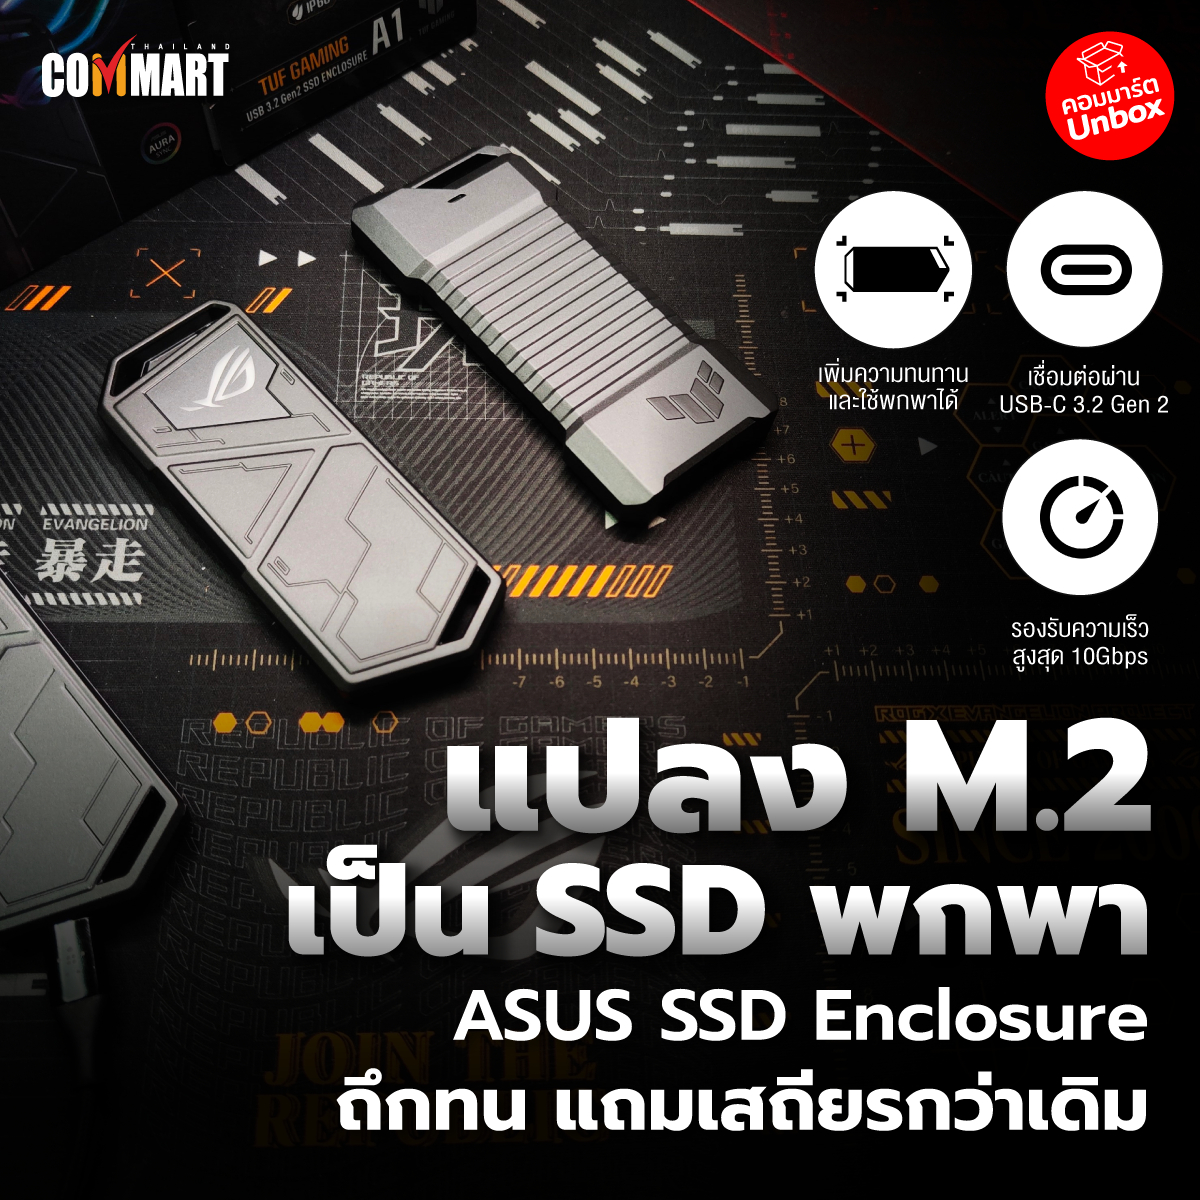 รีวิว : ASUS SSD Enclosure แปลง M.2 เป็นพกพา ทั้งถึกทั้งเสถียร